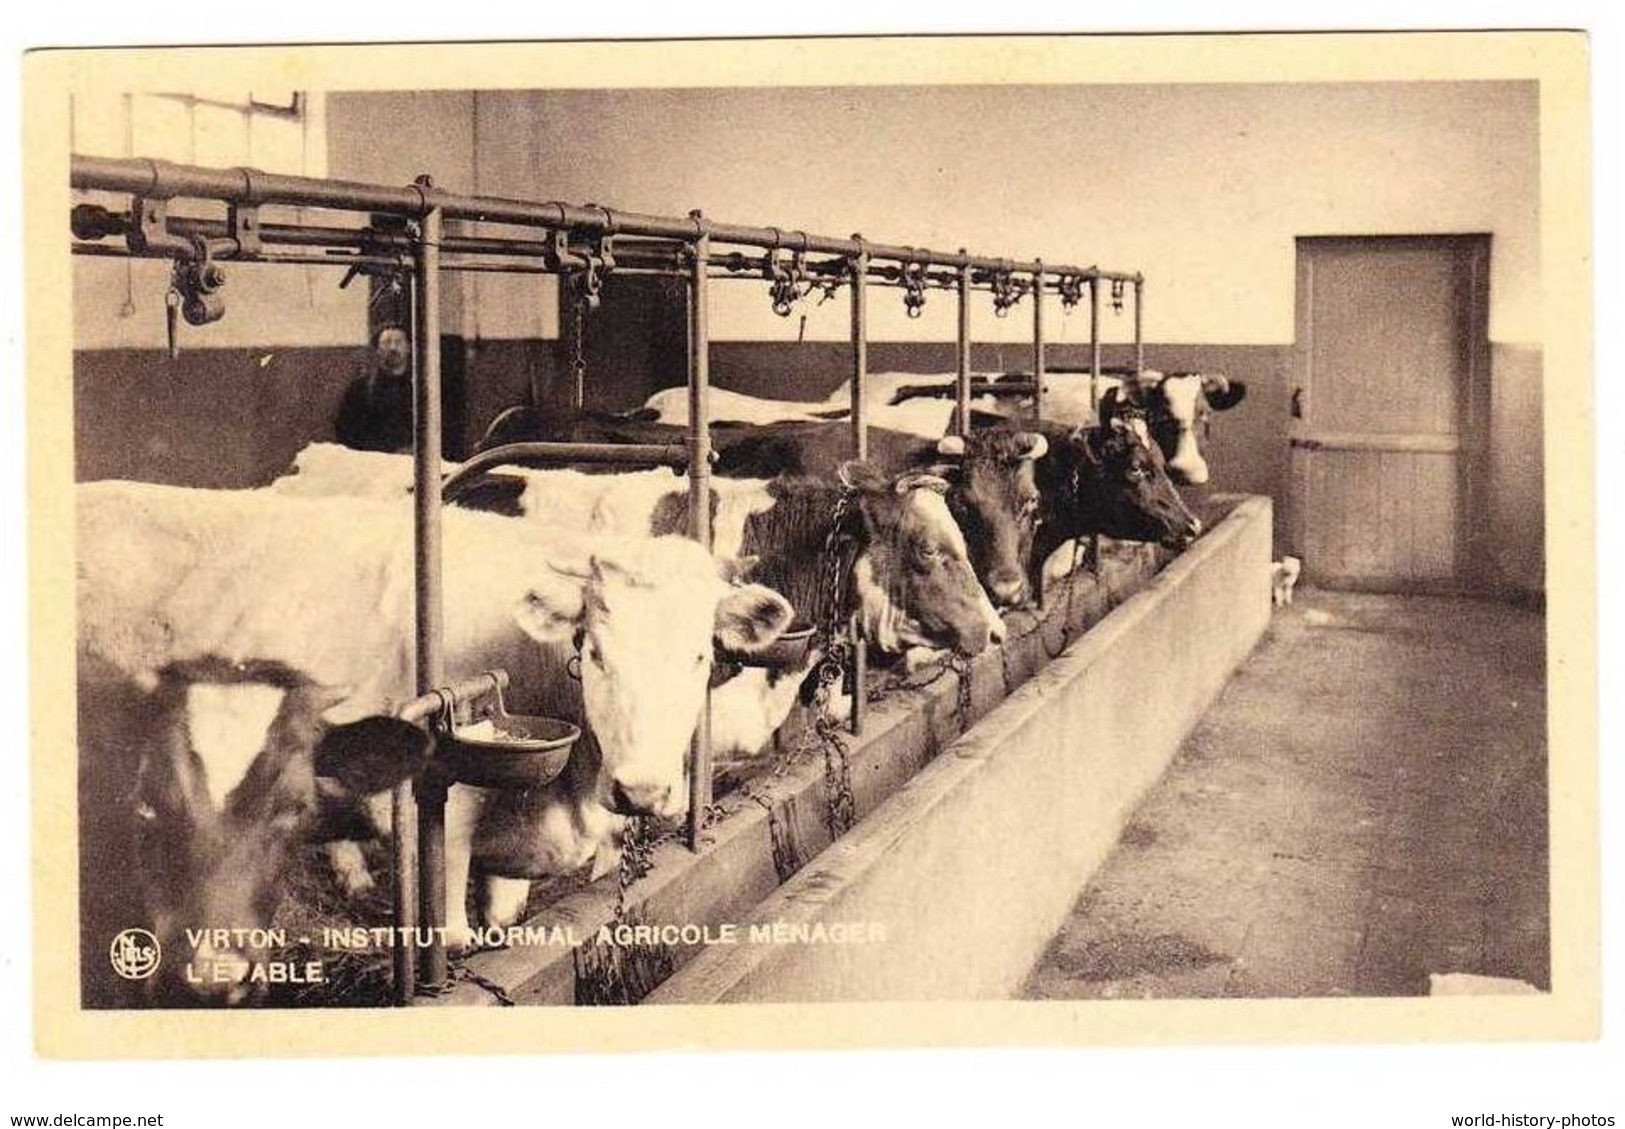 CPA - VIRTON - Institut Normal Agricole Ménager - Groupe De Vache à L'étable - Agriculture Elevage Animal Belge - Virton